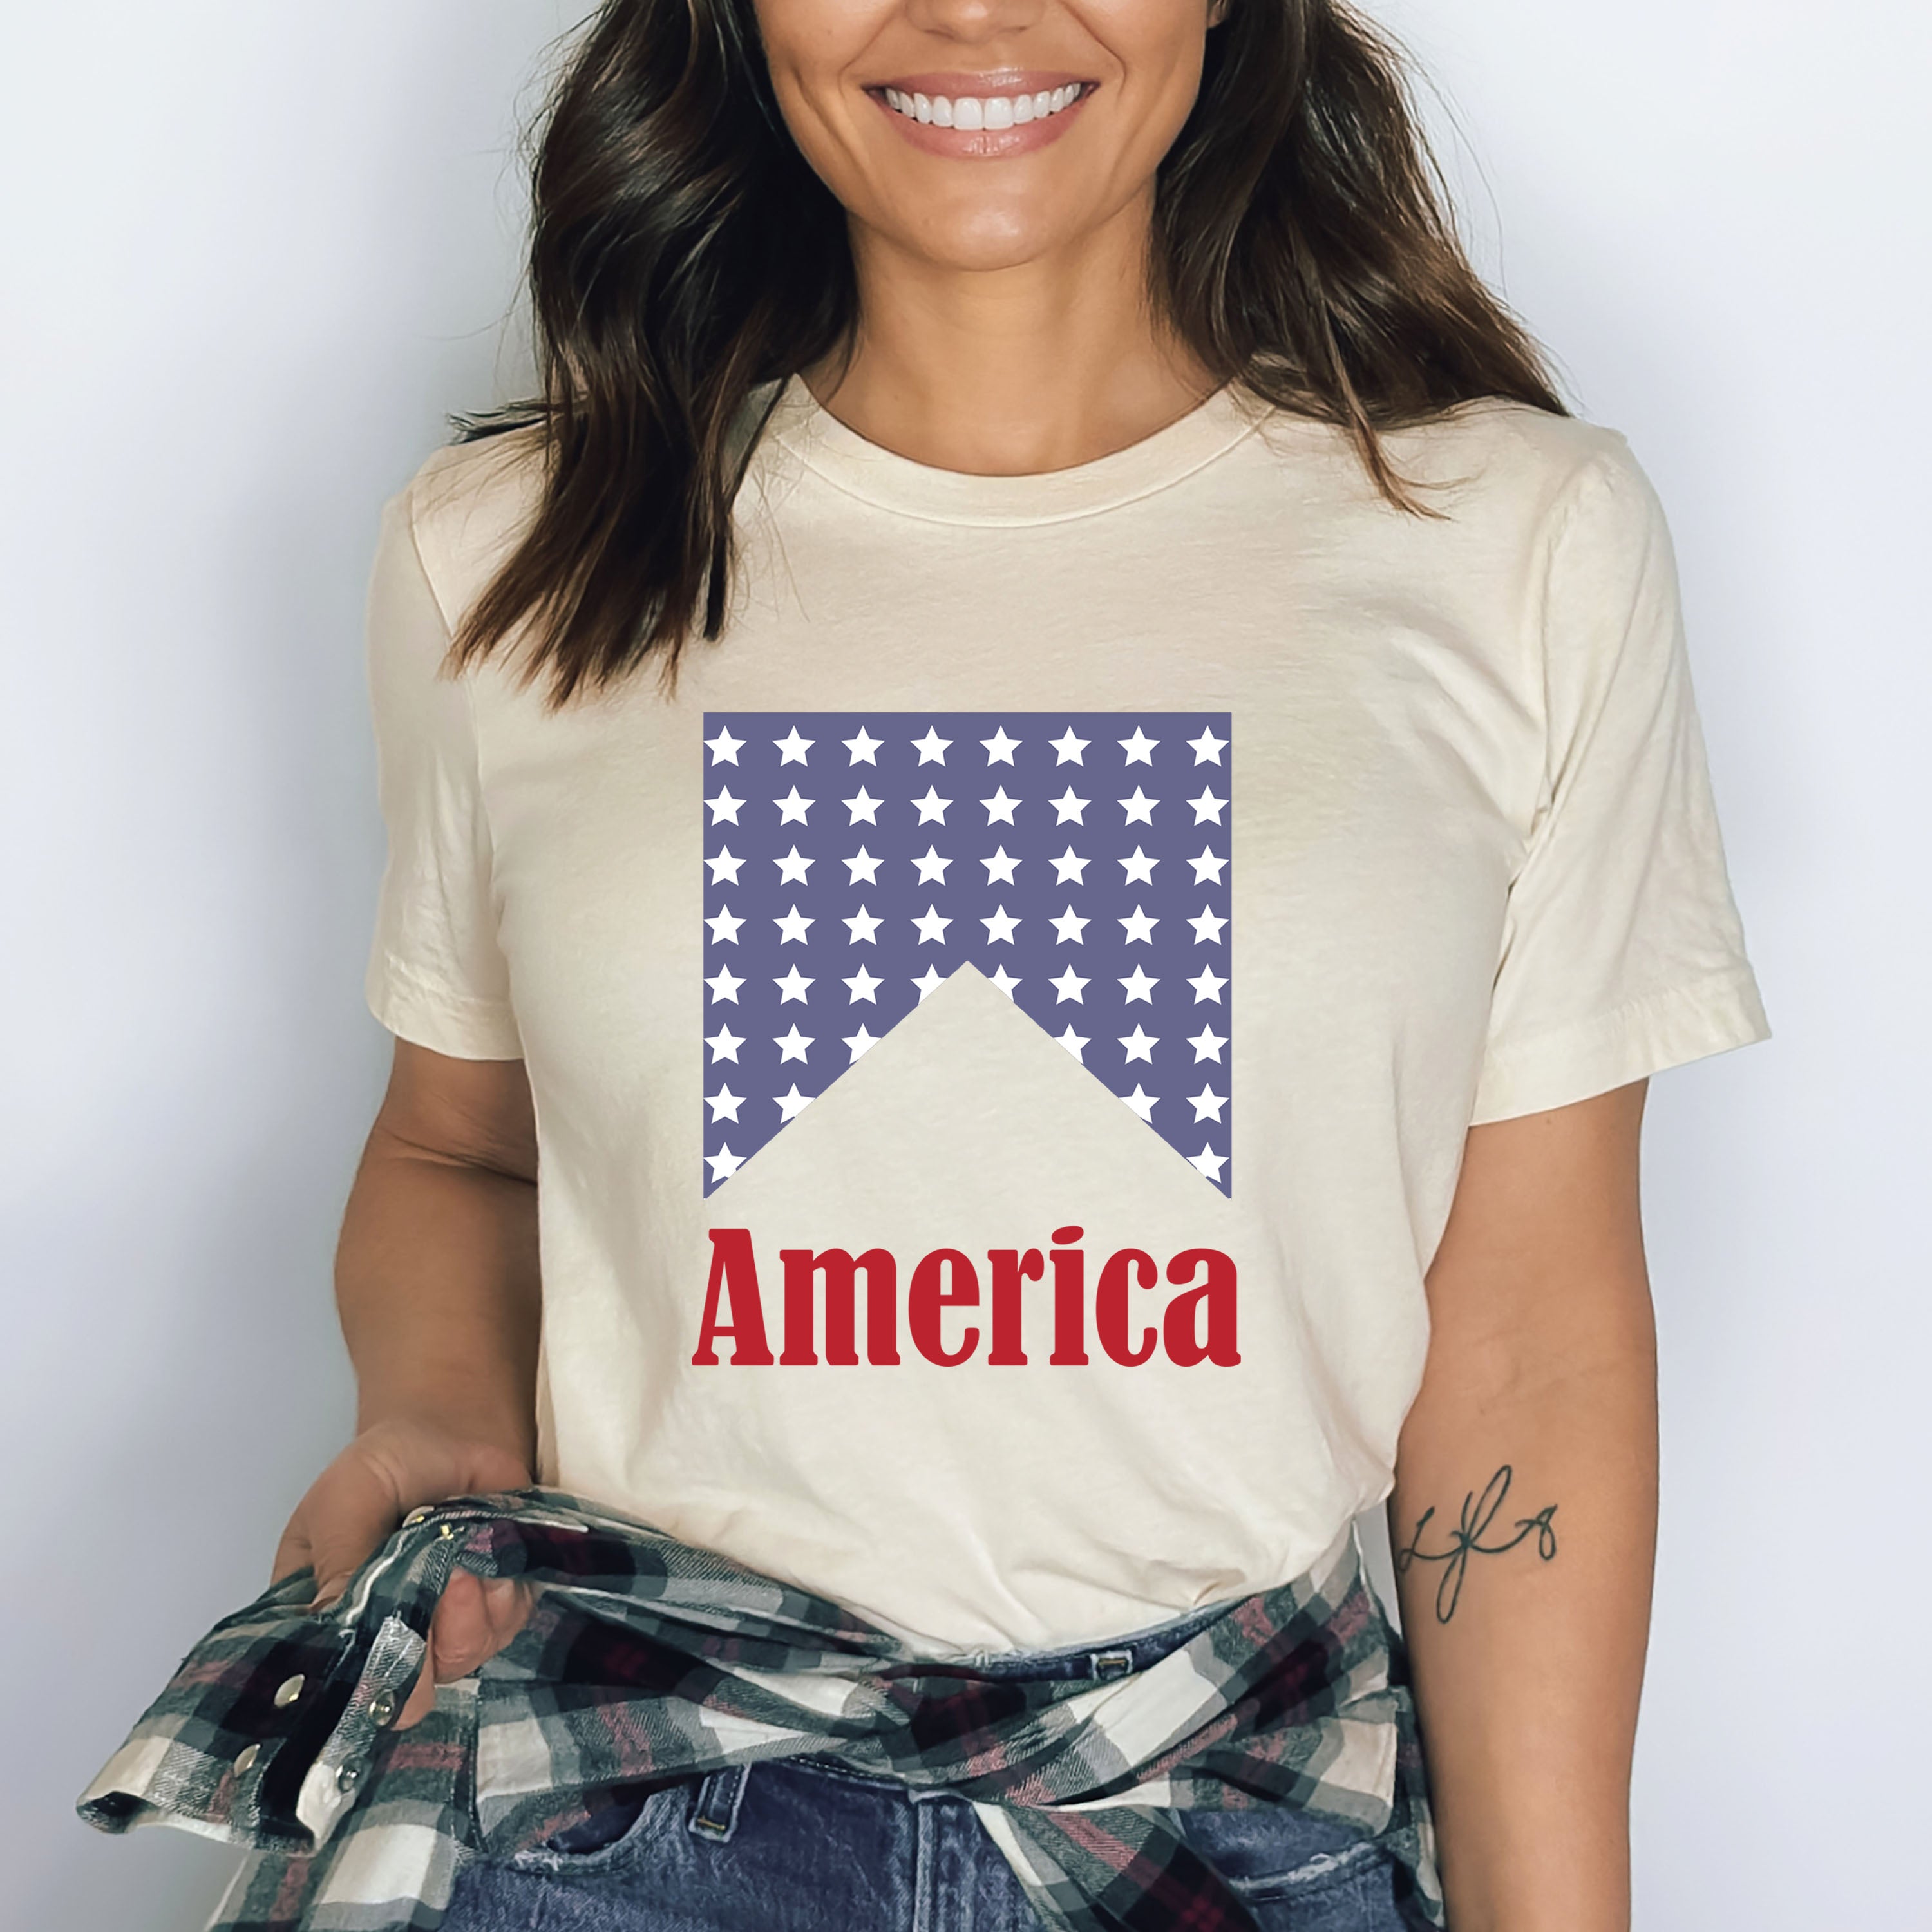 American - Bella canvas